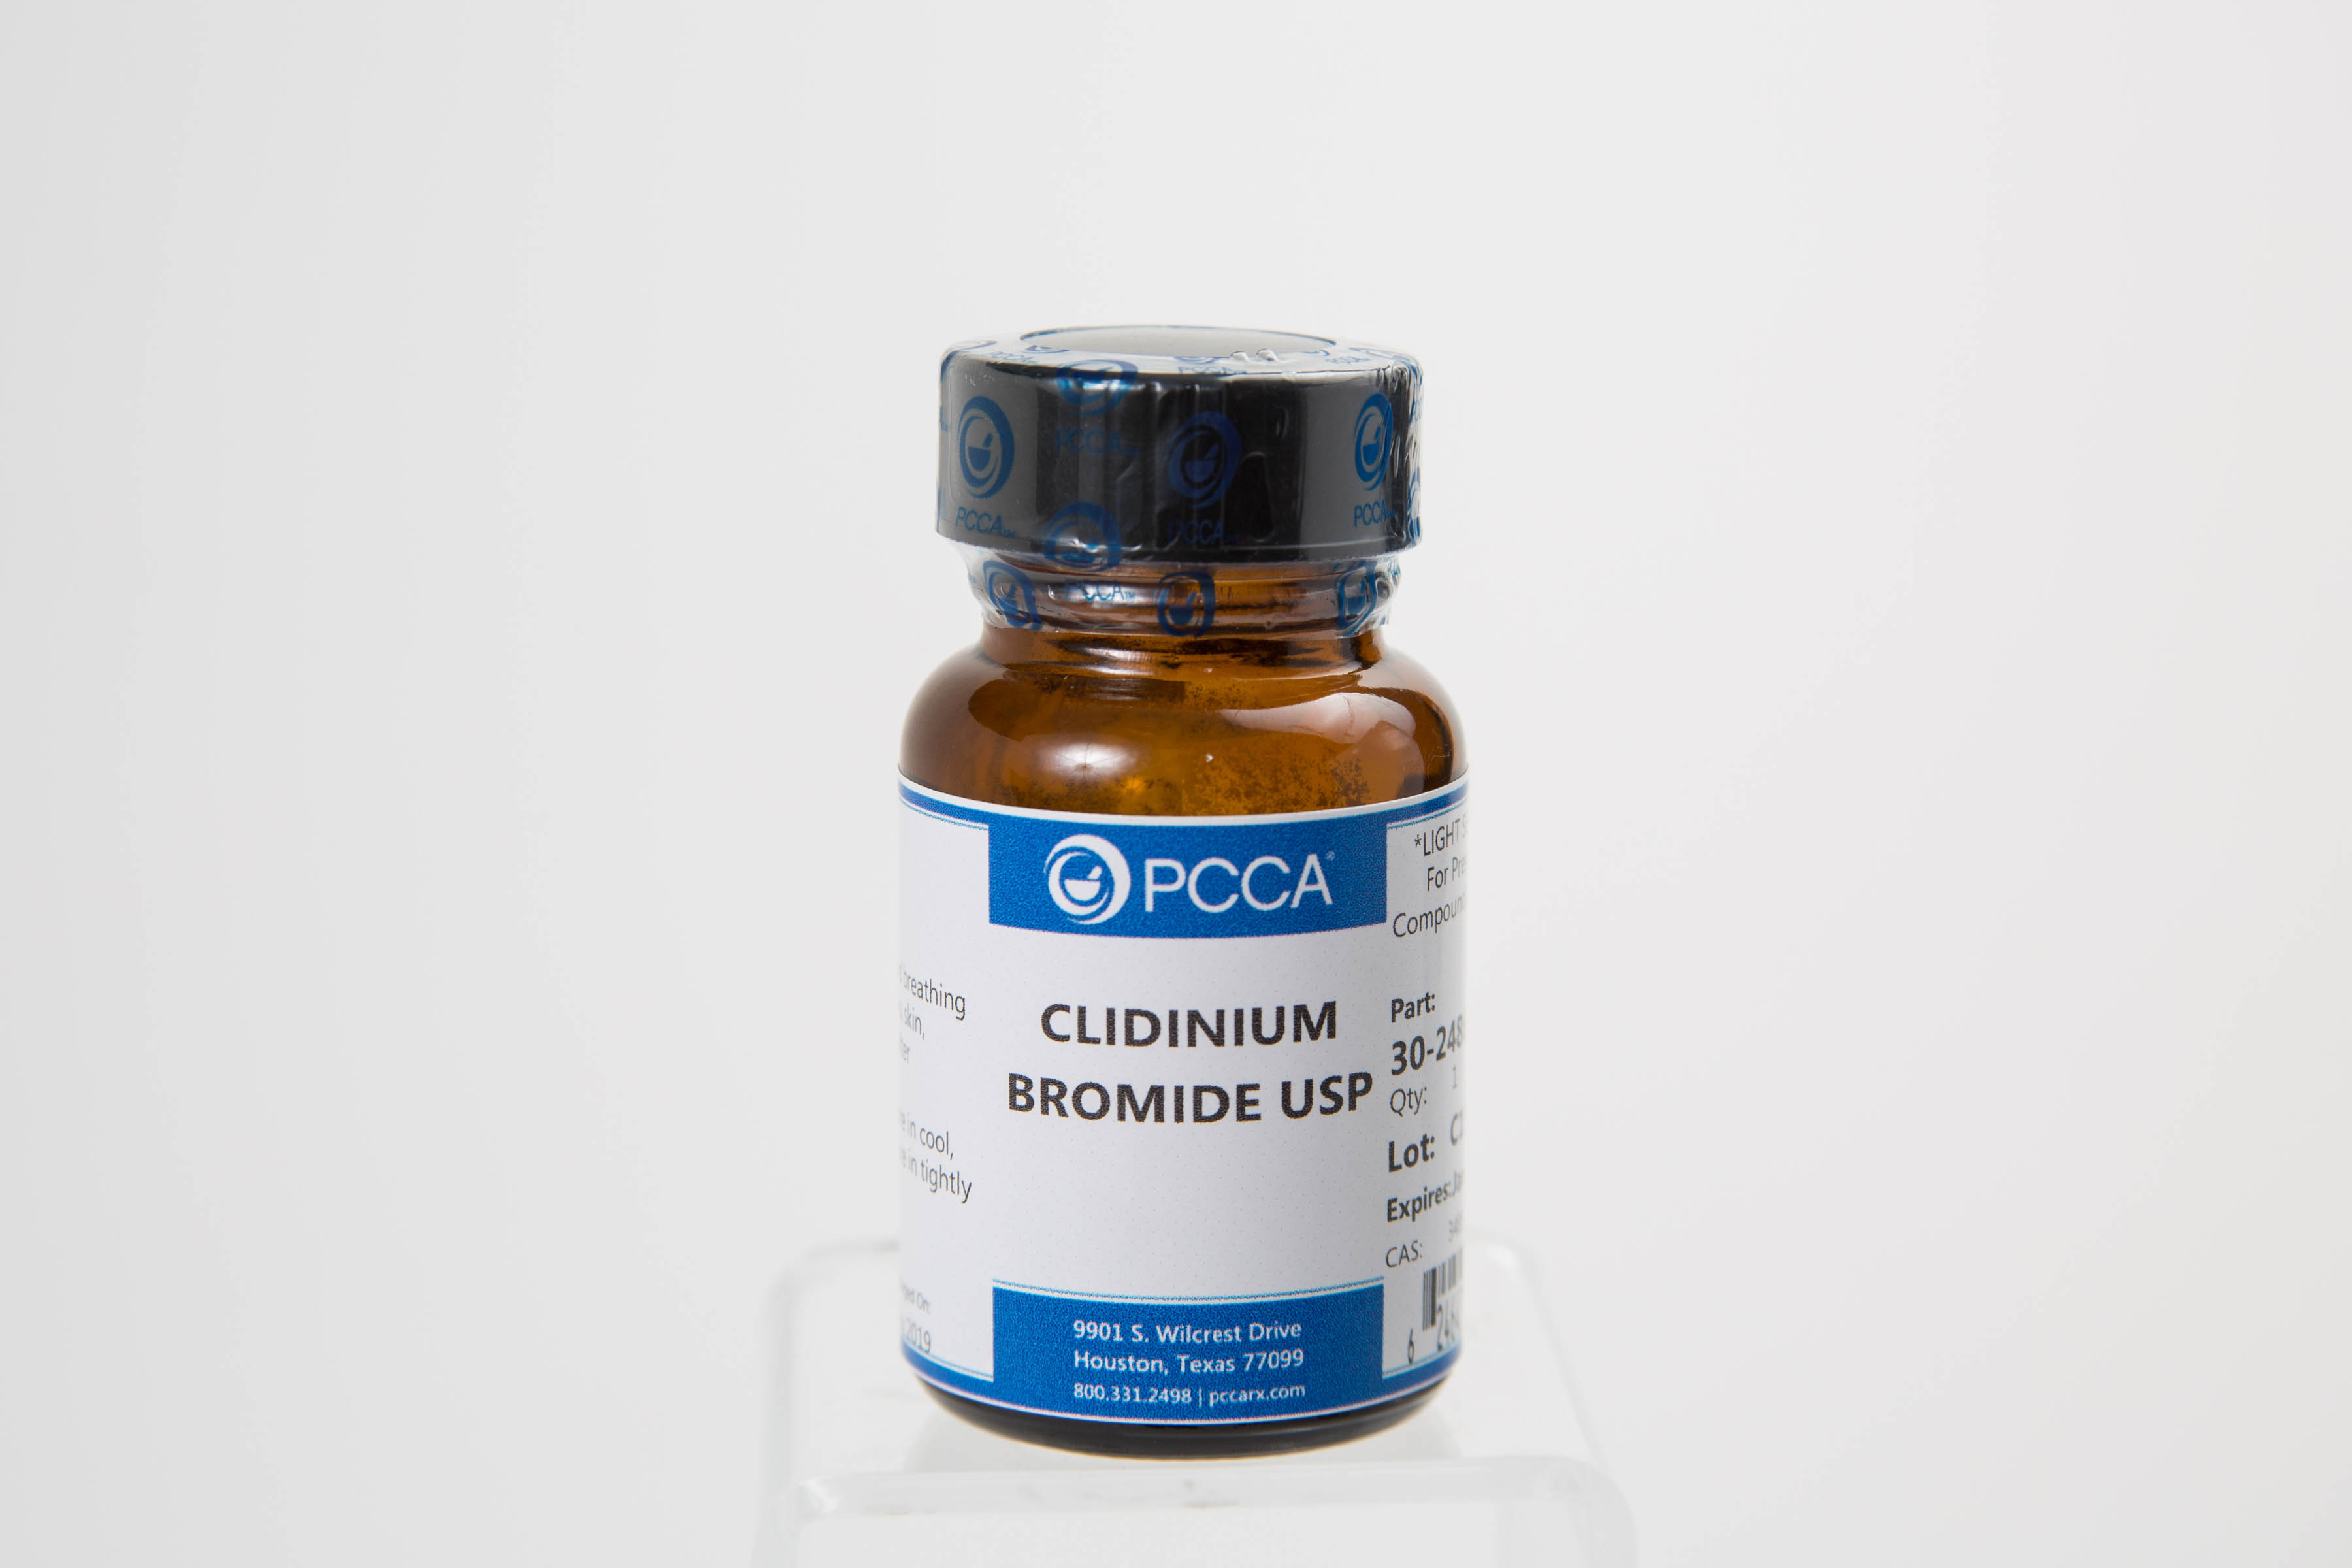 clidinium bromide คือ mechanism